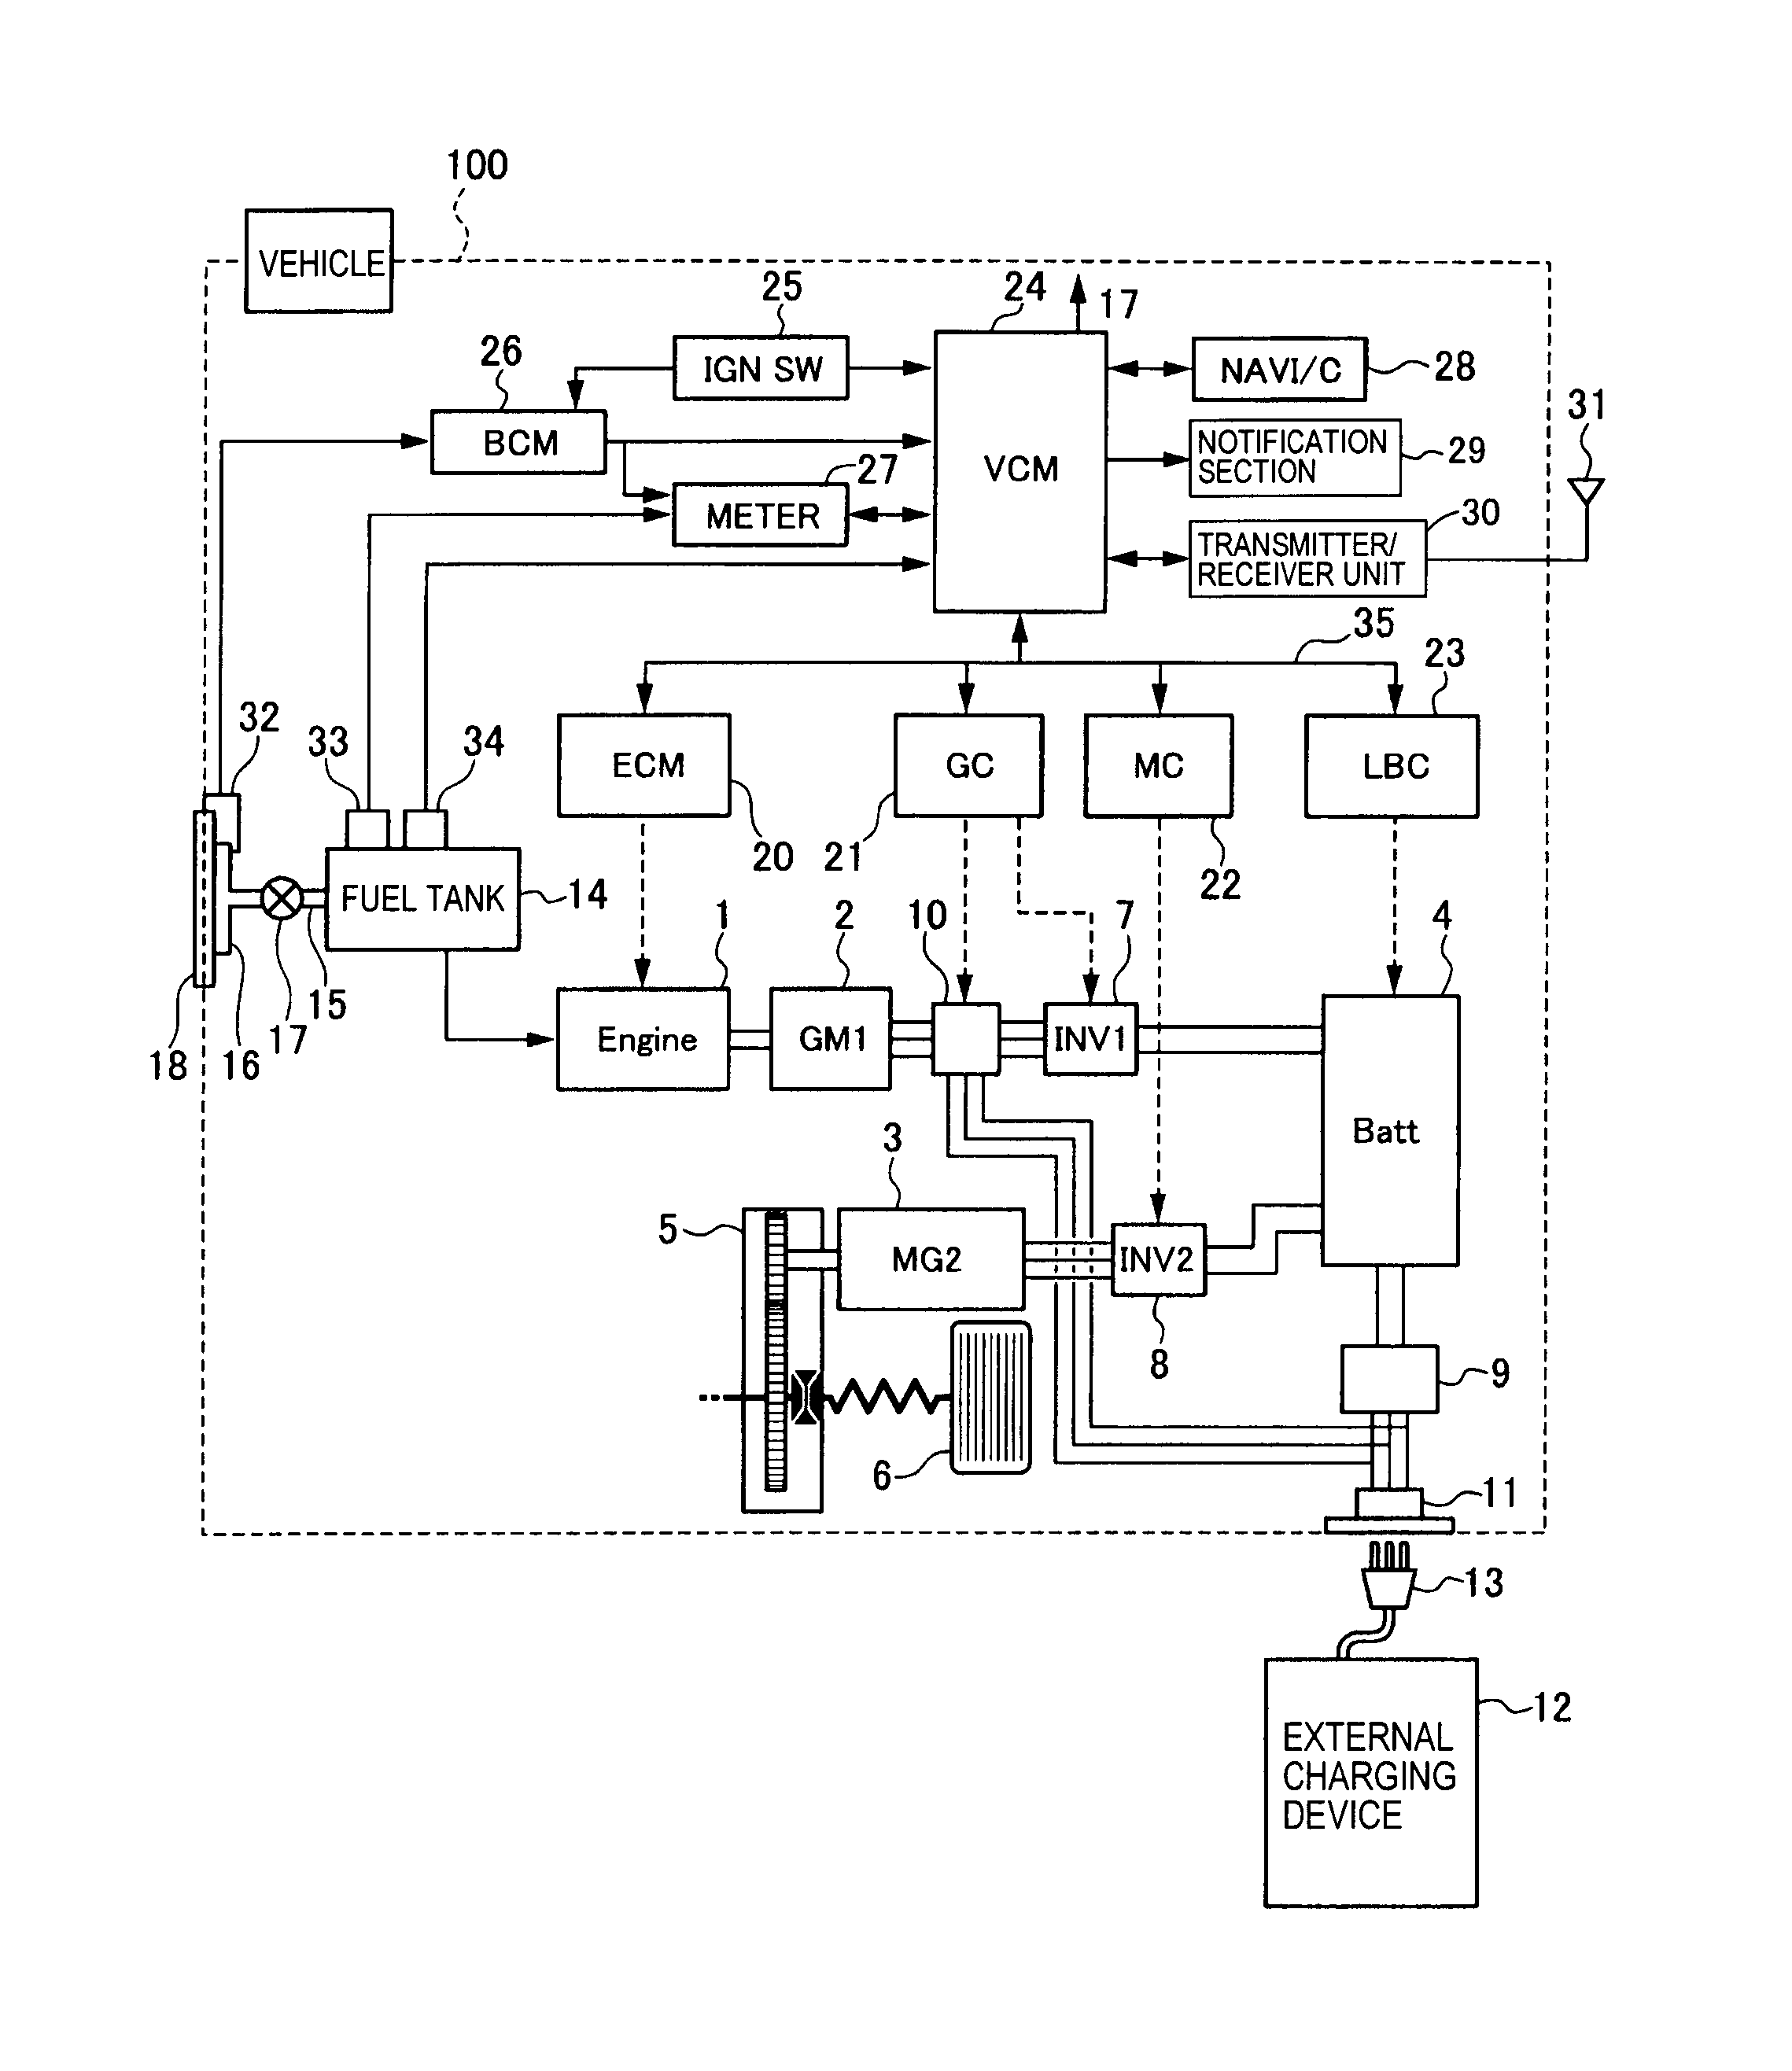 dayton hoist wiring diagram